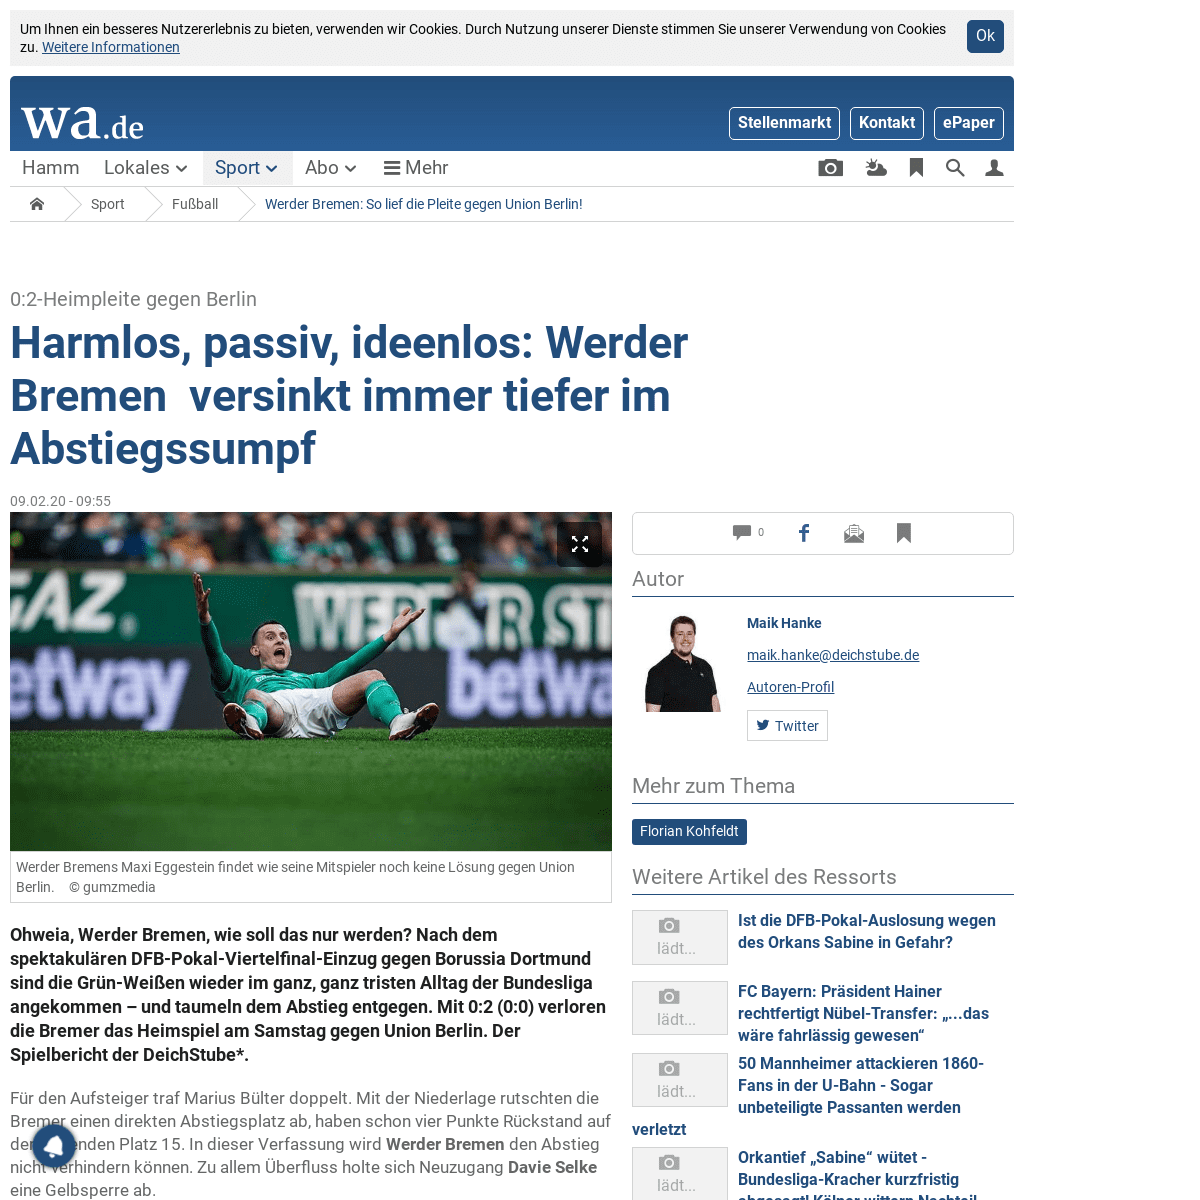 A complete backup of www.wa.de/sport/fussball/werder-bremen-union-berlin-live-ticker-bundesliga-21-spieltag-aufstellung-startelf